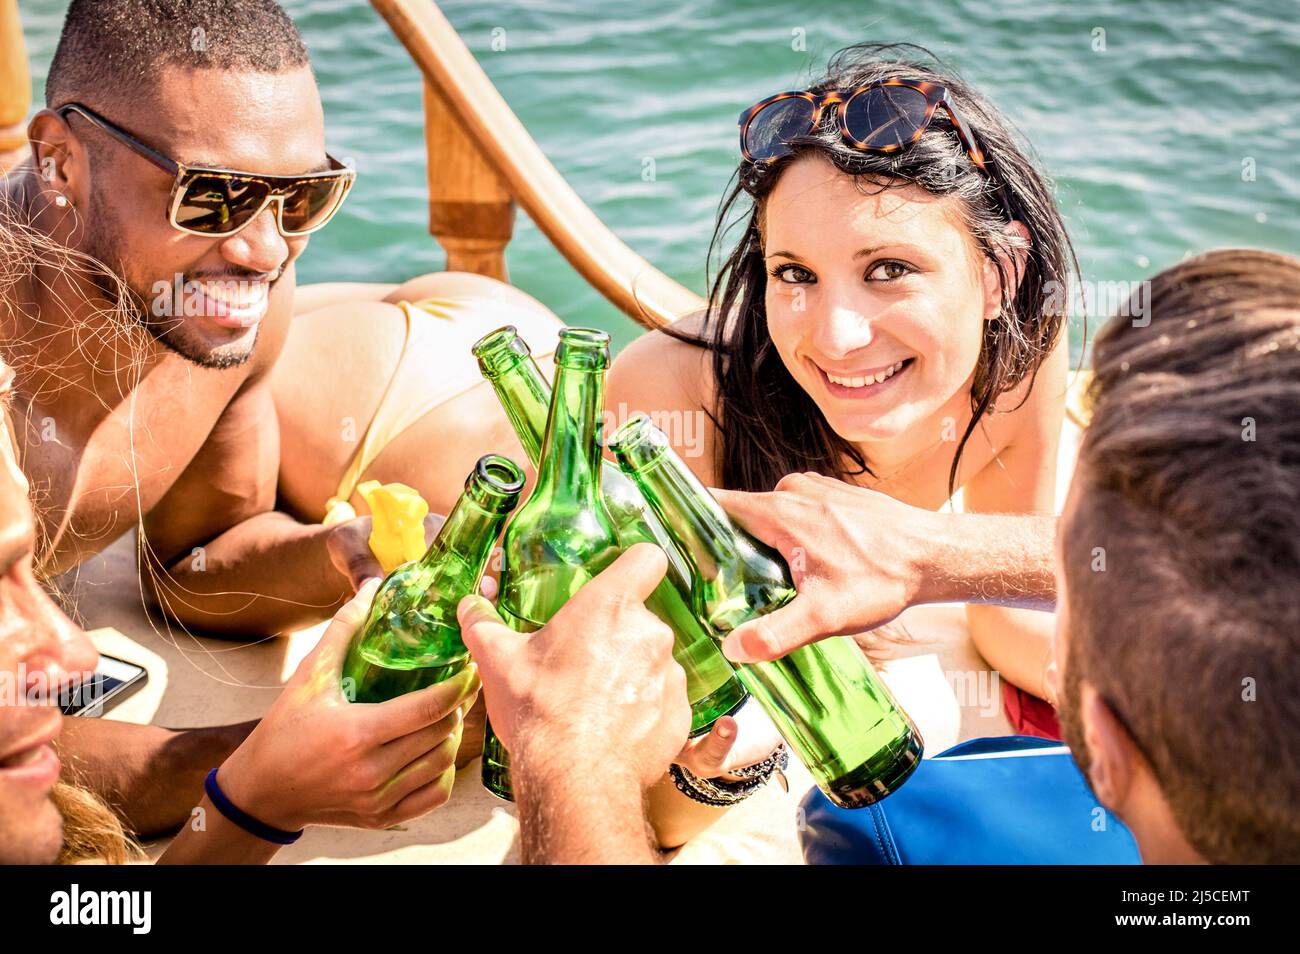 Des gens multiraciaux en yacht qui boivent ensemble - un groupe d'amis riches qui toastent de la bière et qui font la fête sur un bateau à voile - concept de voyage de luxe avec happ Banque D'Images